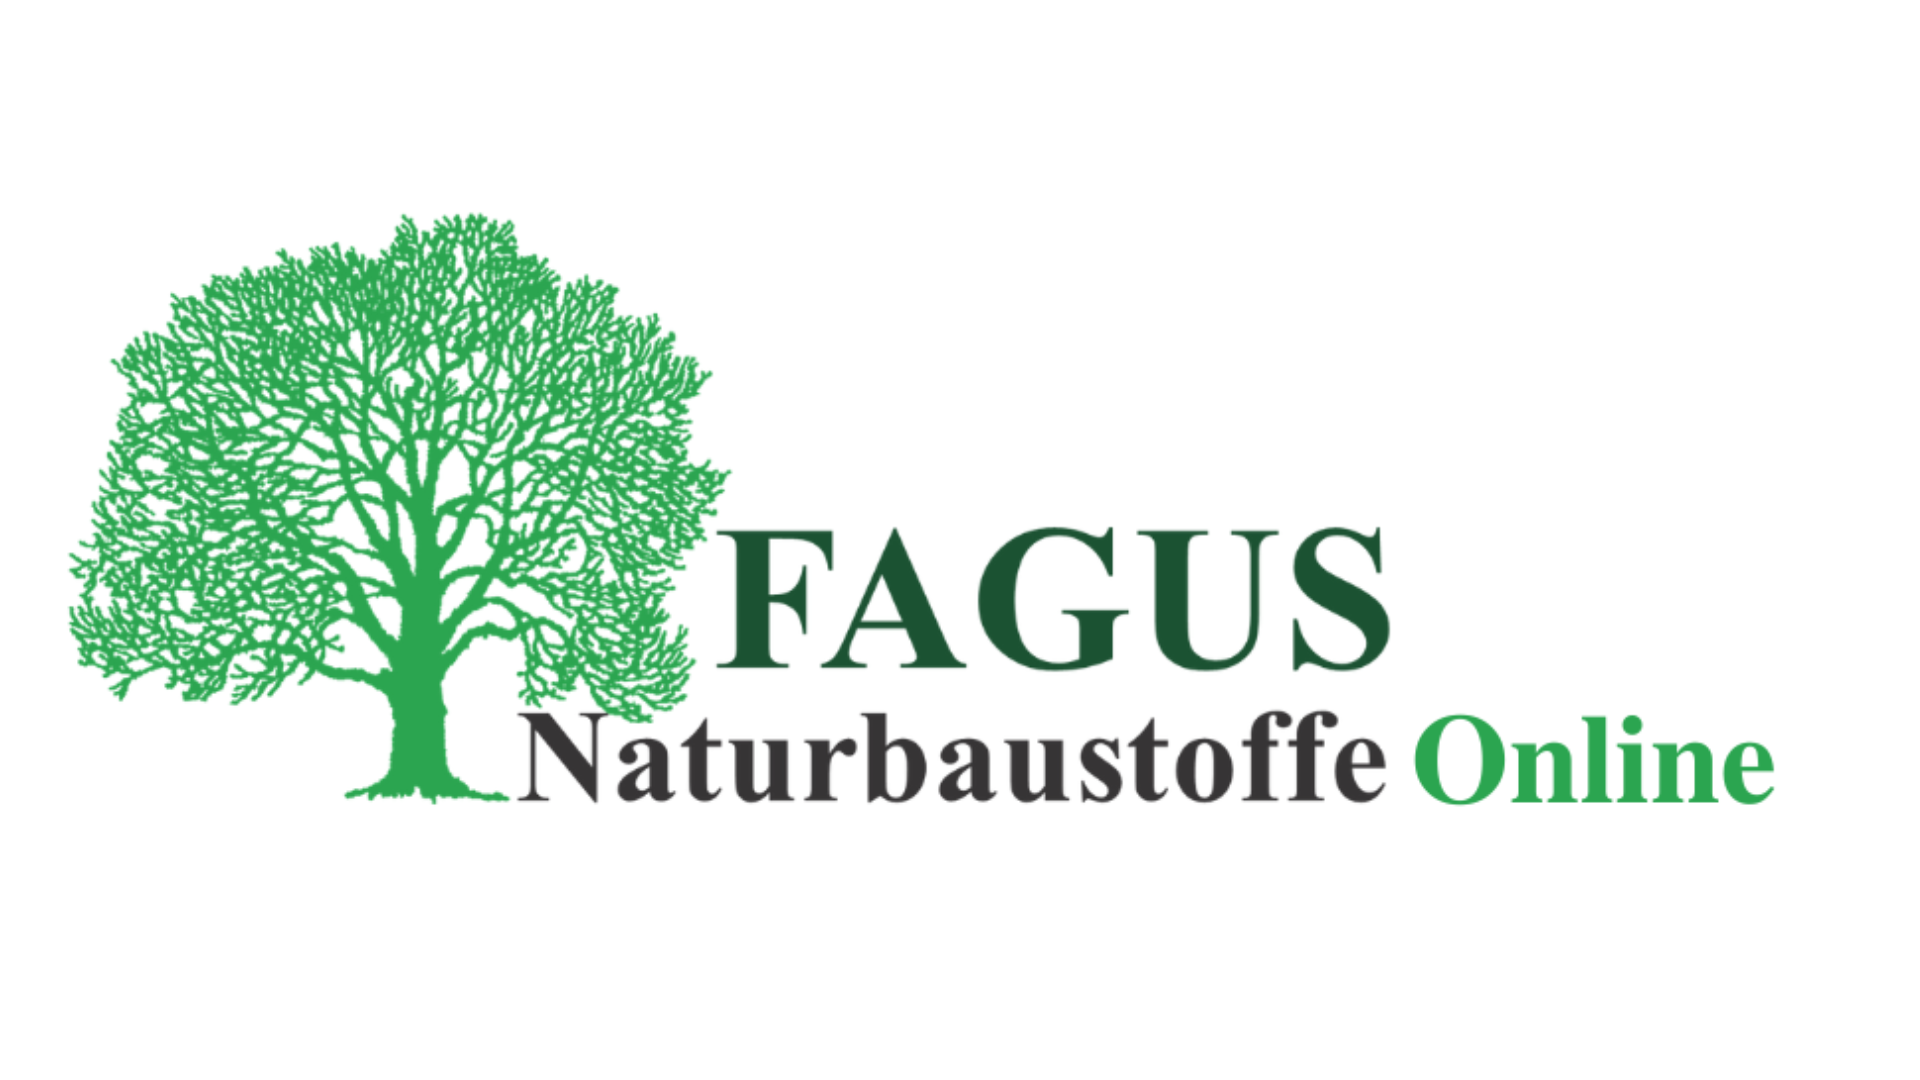 Das Logo von unserem Naturbaustoffhandel Online Shop.